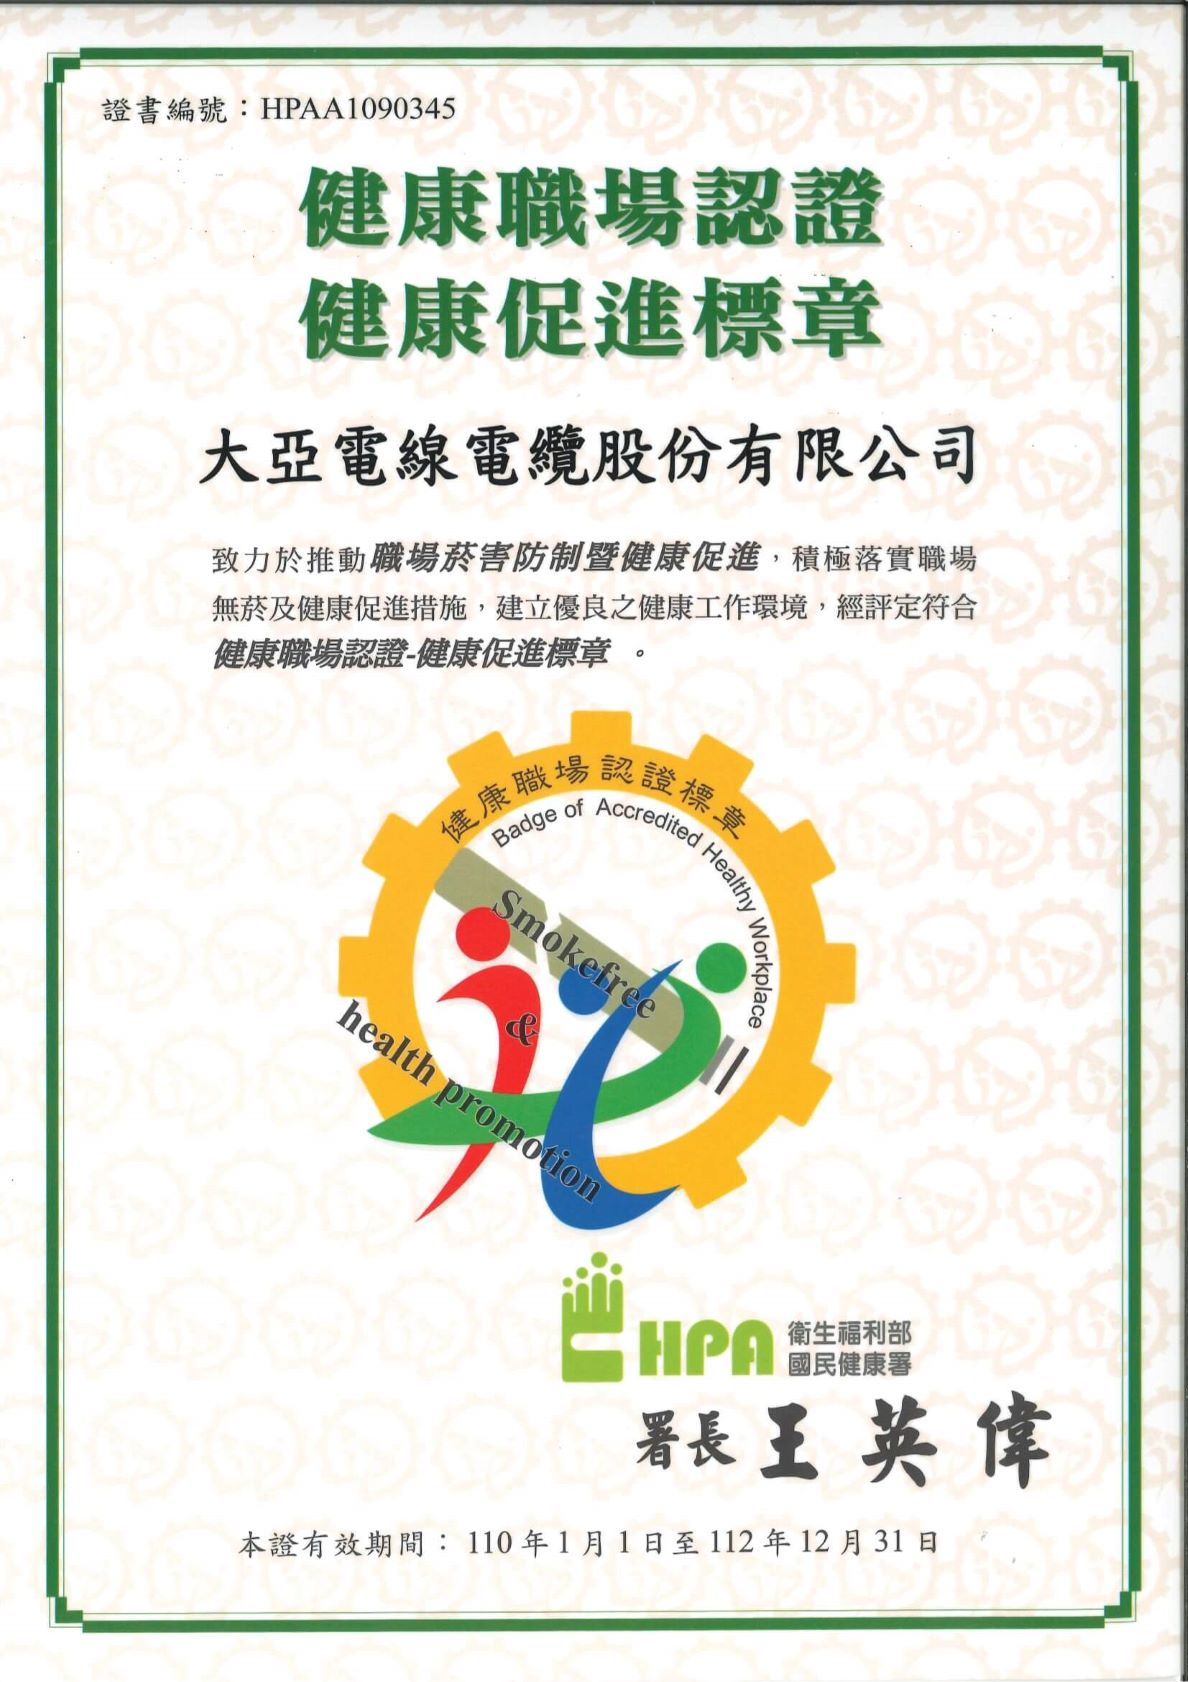 大亚集团取得国民健康署健康职场认证之标章